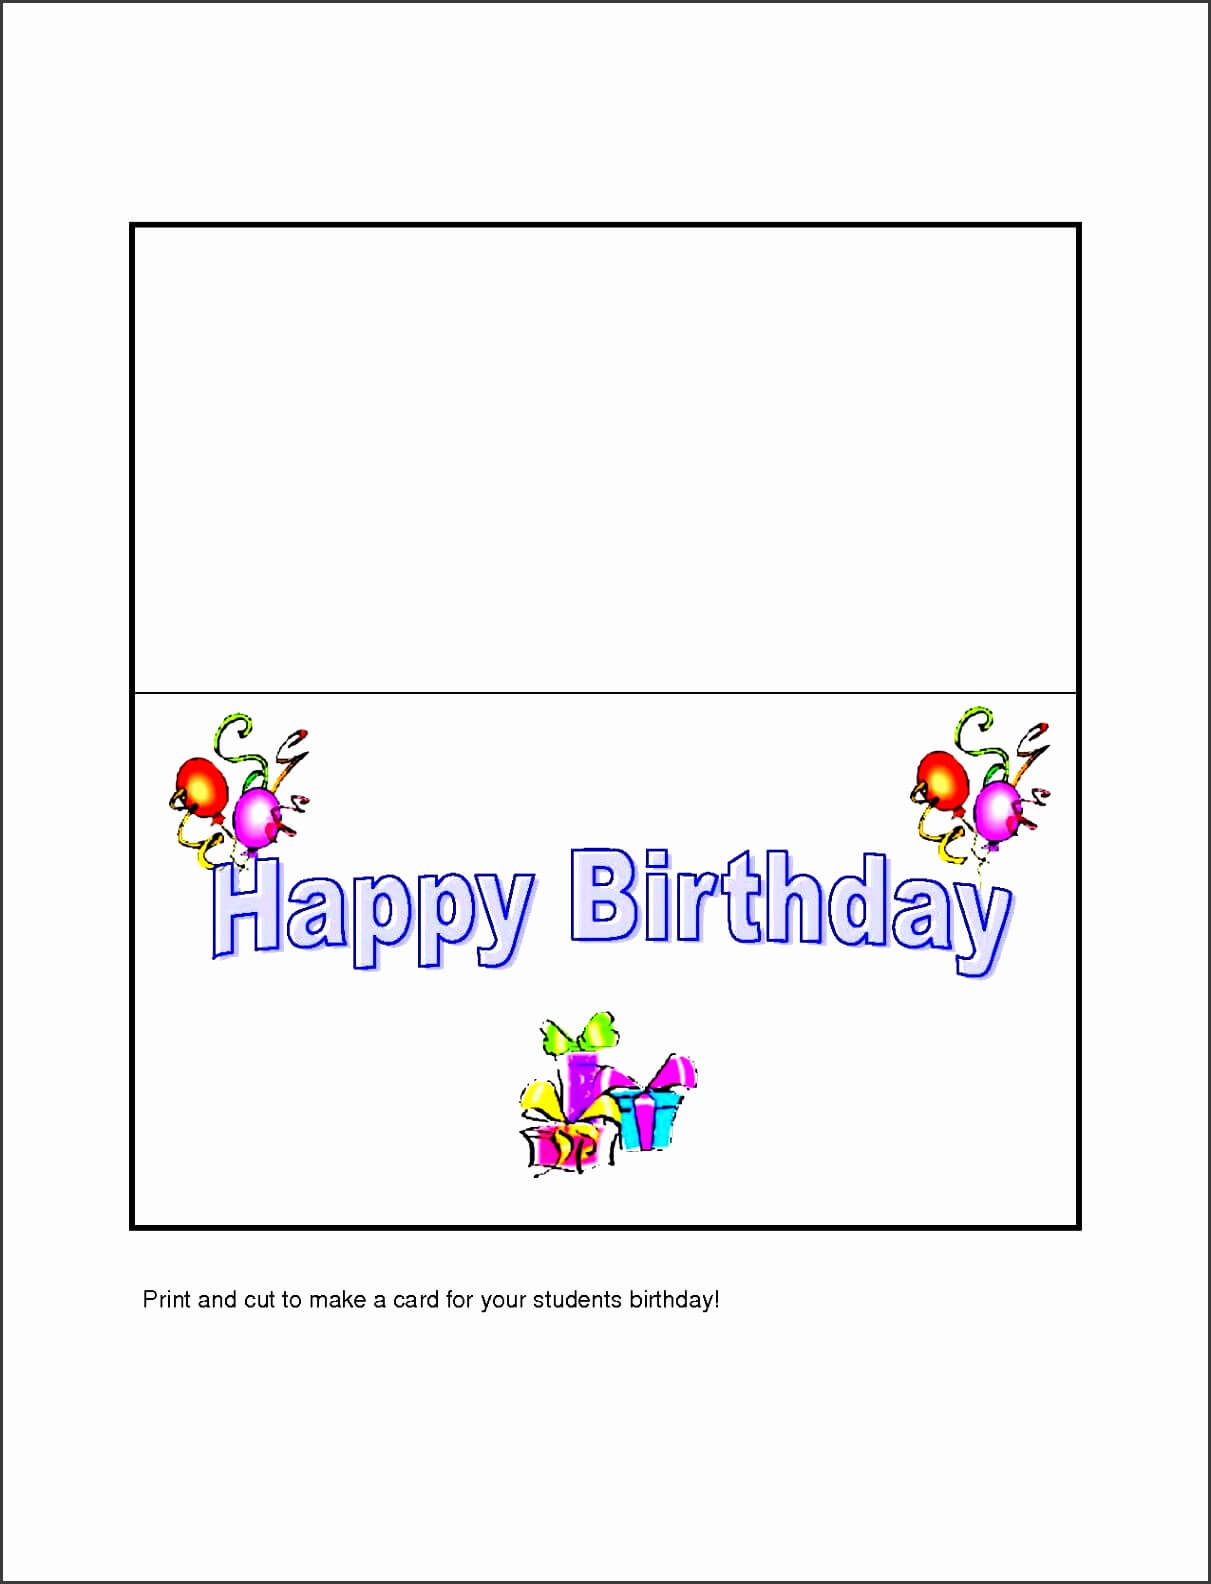 Beautiful 10 Free Microsoft Word Greeting Card Templates Within Microsoft Word Birthday Card Template